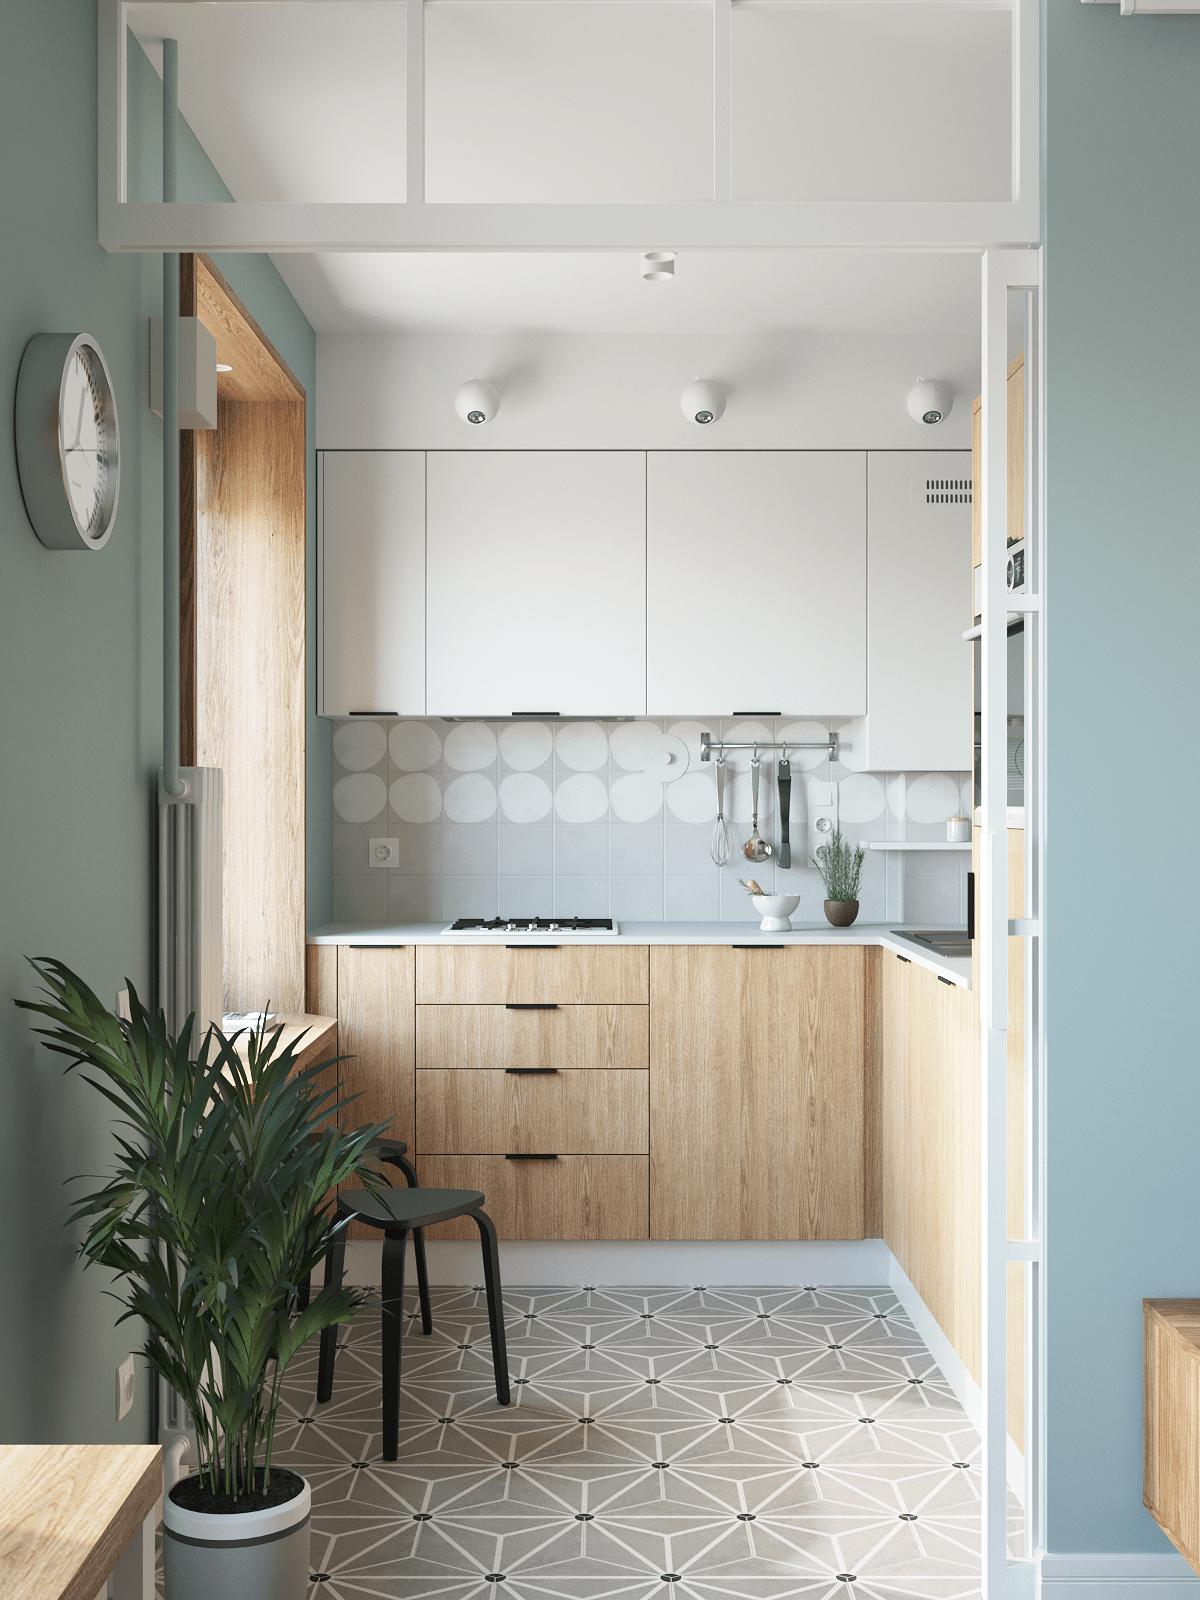 Phòng bếp được bố trí riêng biệt với thiết kế kiểu chữ L phù hợp với cấu trúc của căn hộ, đồng thời dùng gạch bông lát sàn để phân vùng với phòng khách lát sàn gỗ.